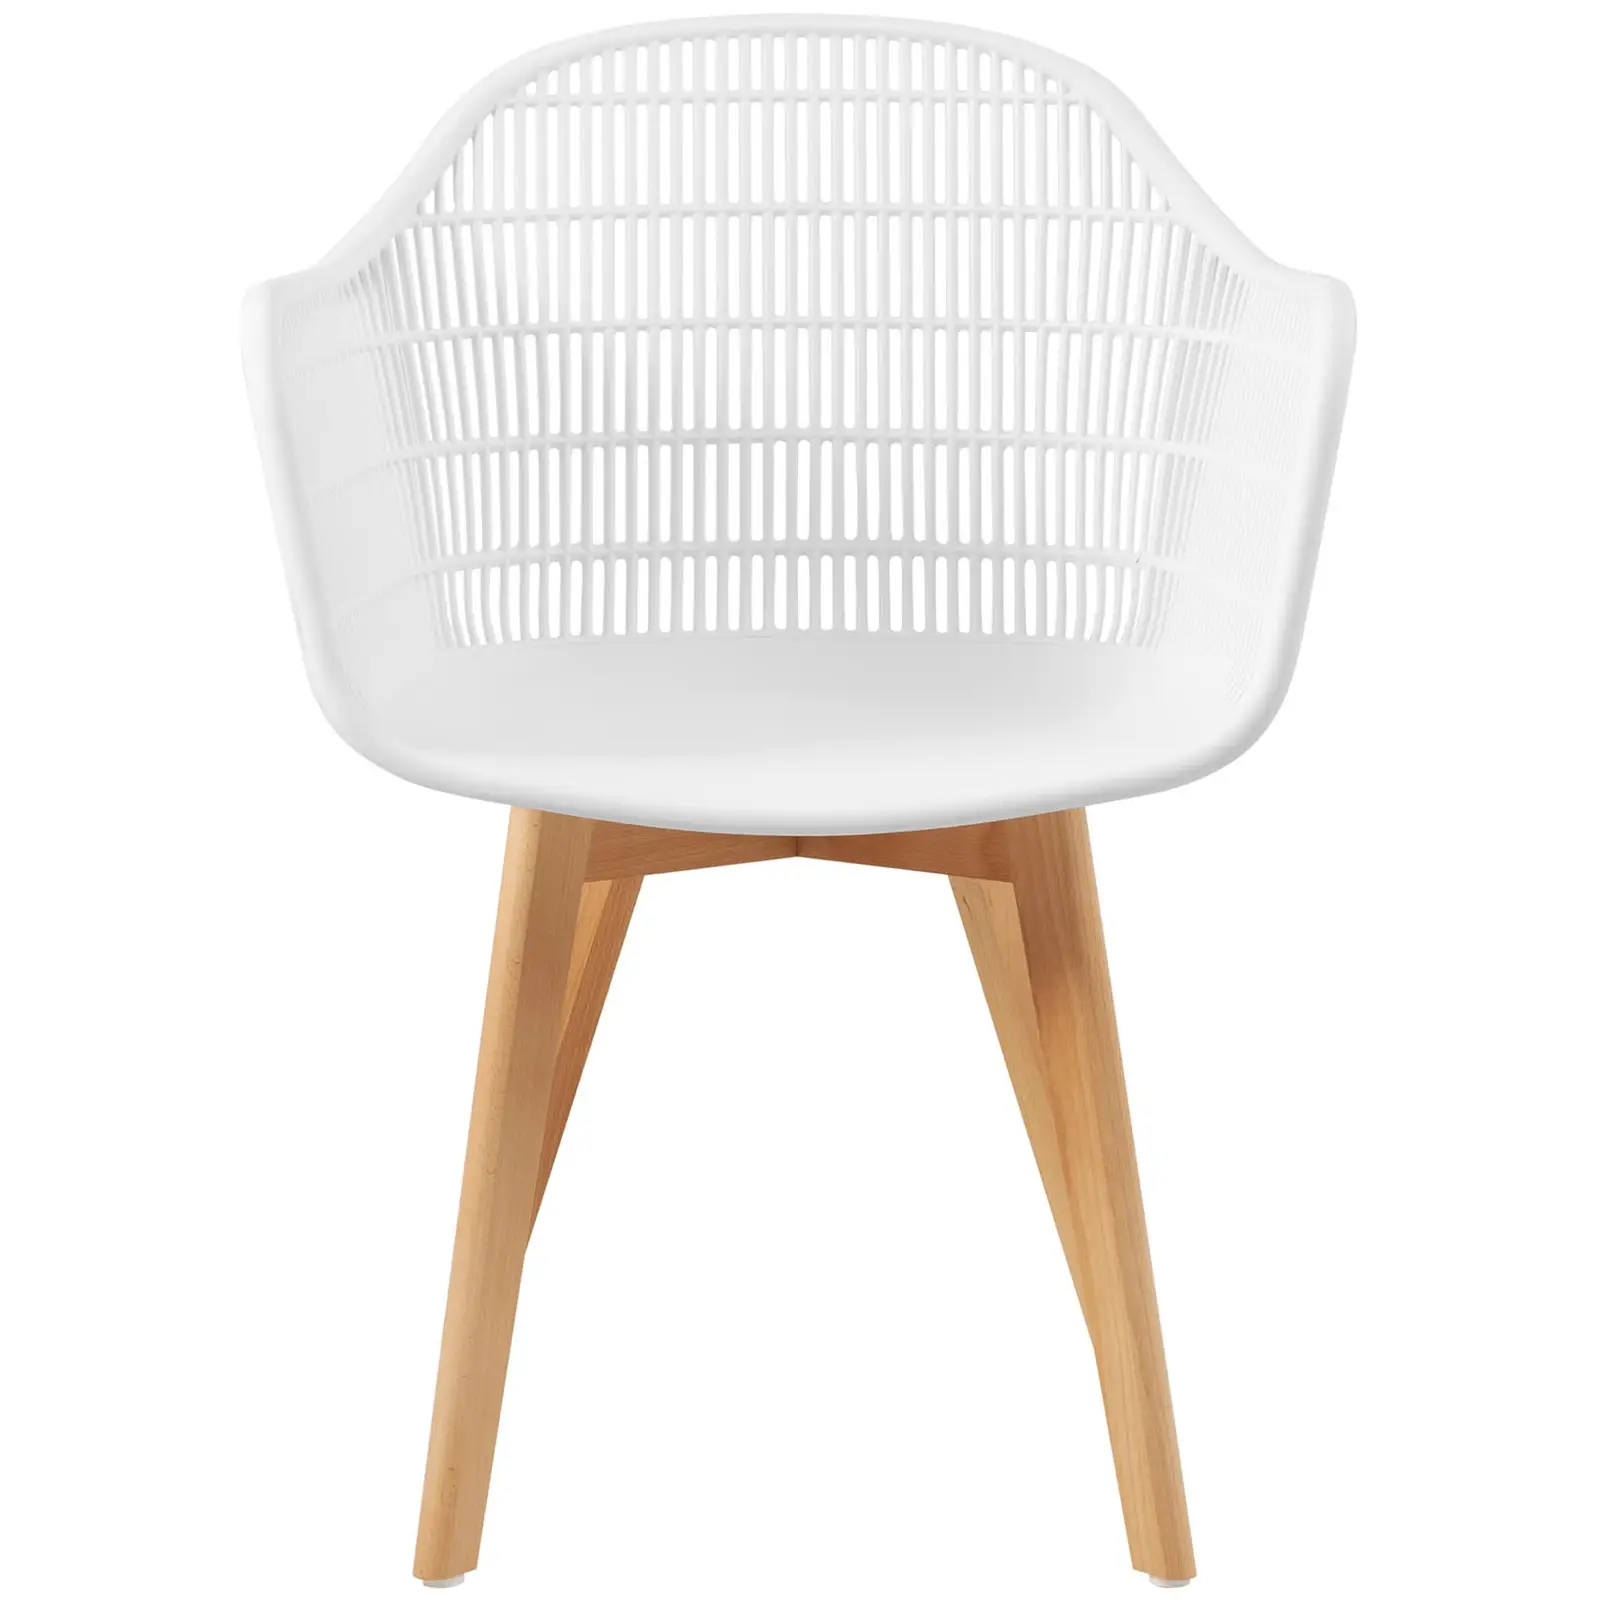 Chaise - Lot de 2 - 150 kg max. - Surface d'assise de 490 x 450 x 450 mm - Coloris blanc